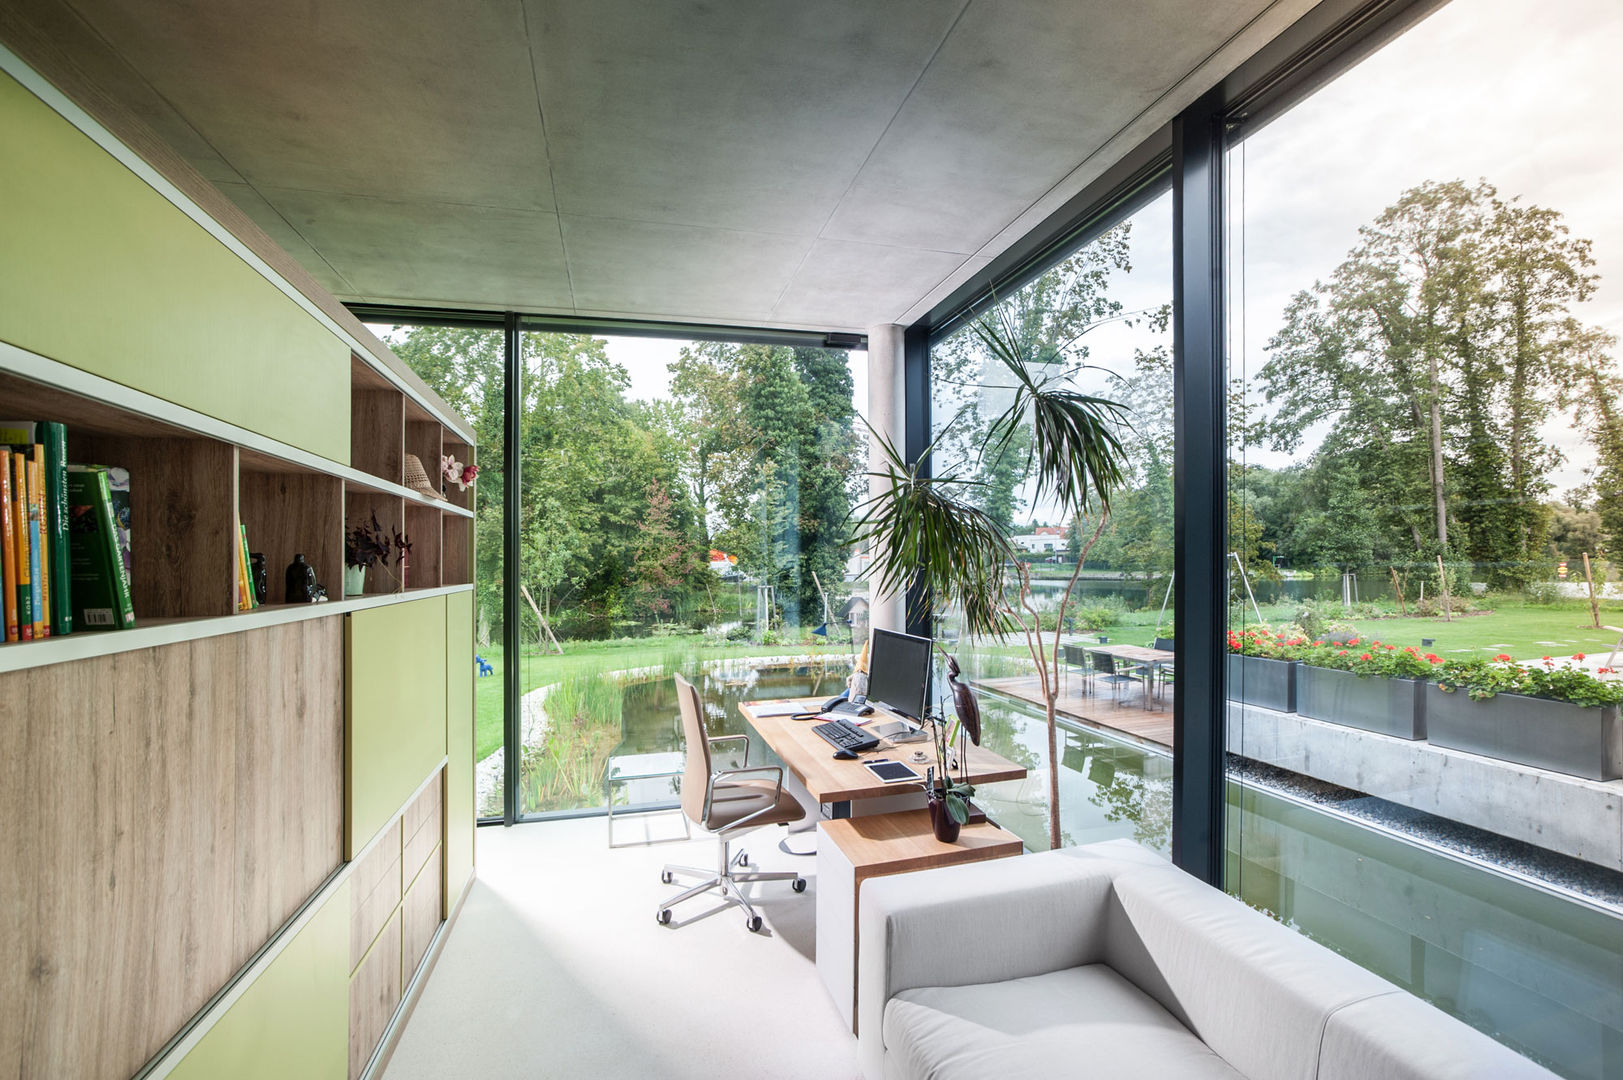 „Inseltraum“ - Einfamilienhaus in Brandenburg an der Havel, Sehw Architektur Sehw Architektur Modern study/office